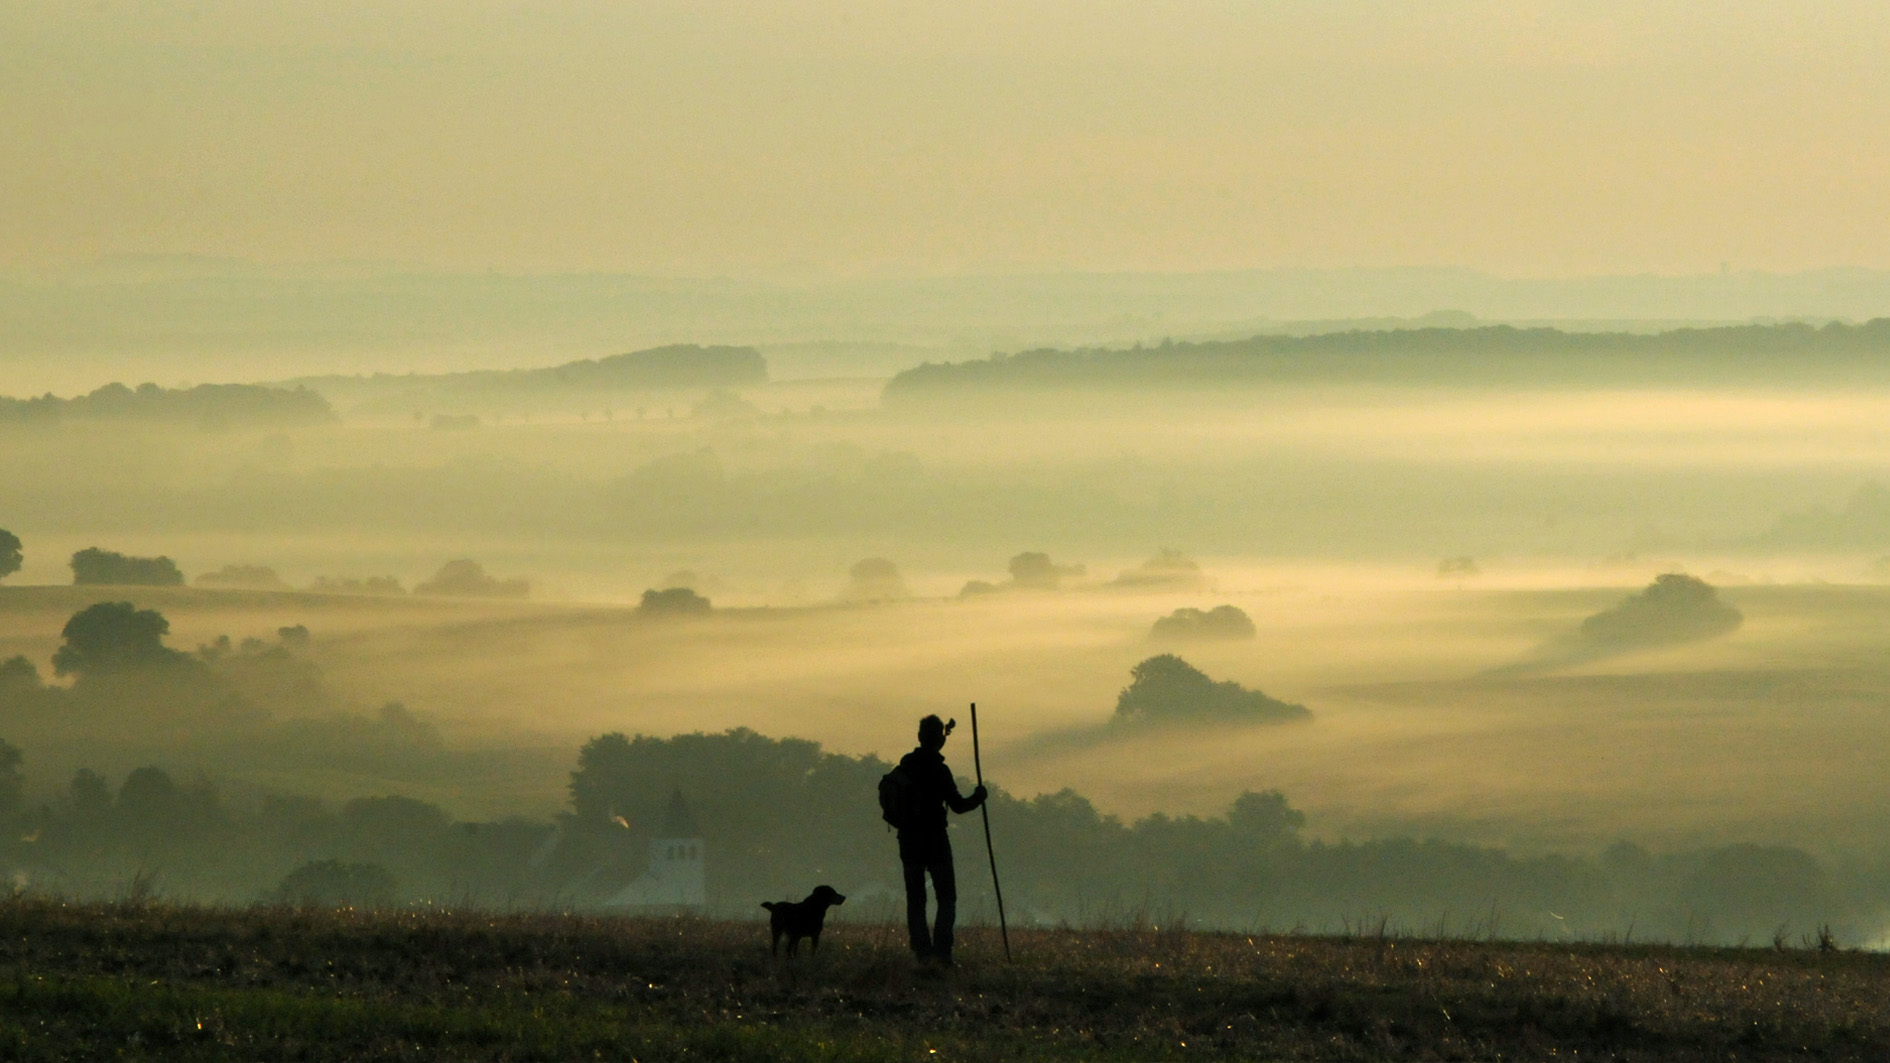 Pilger mit Hund vor Panorama einer nebelverhangenen Herbstlandschaft